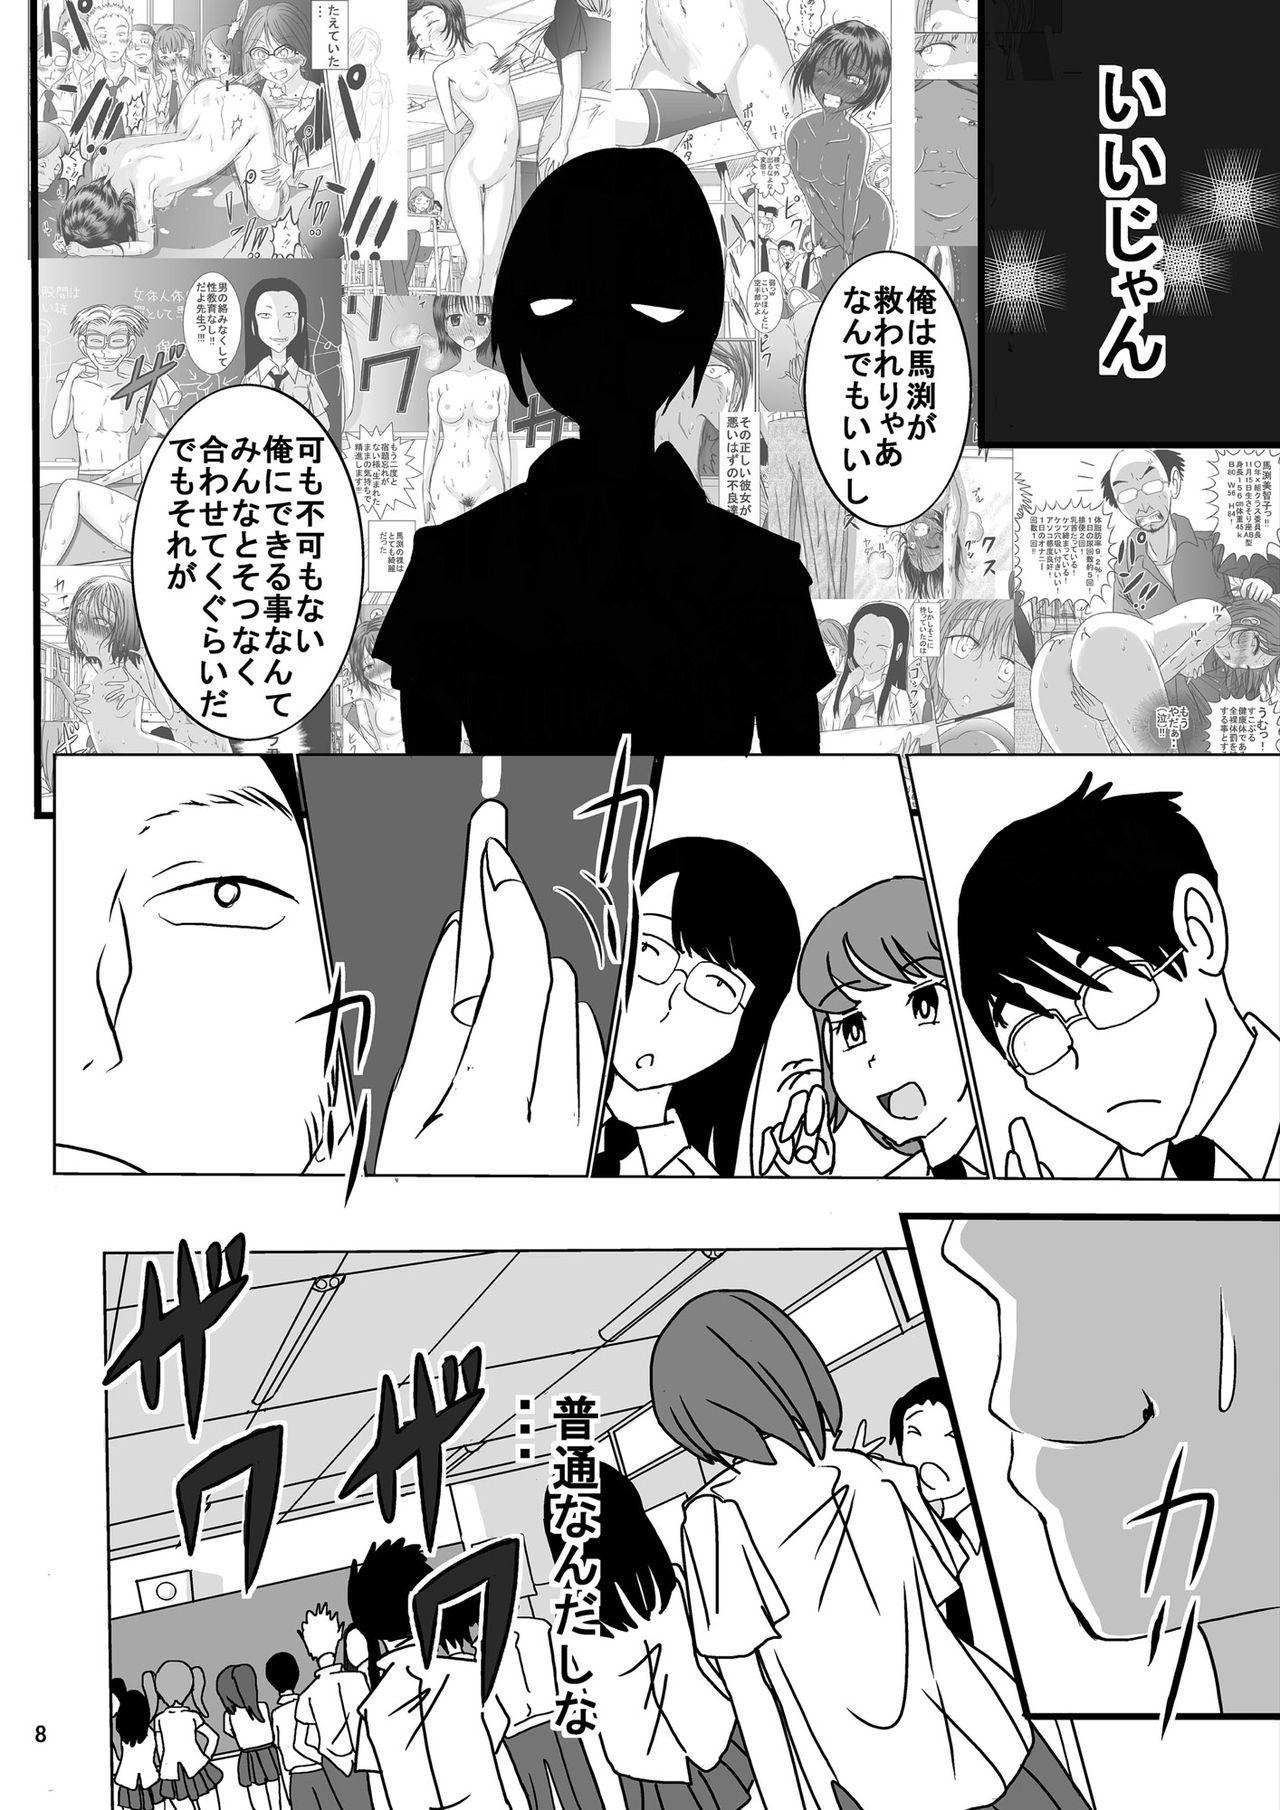 Village Shukudai Wasuremashitako-san e no Zenra Kyouiku 6 Punished - Page 8